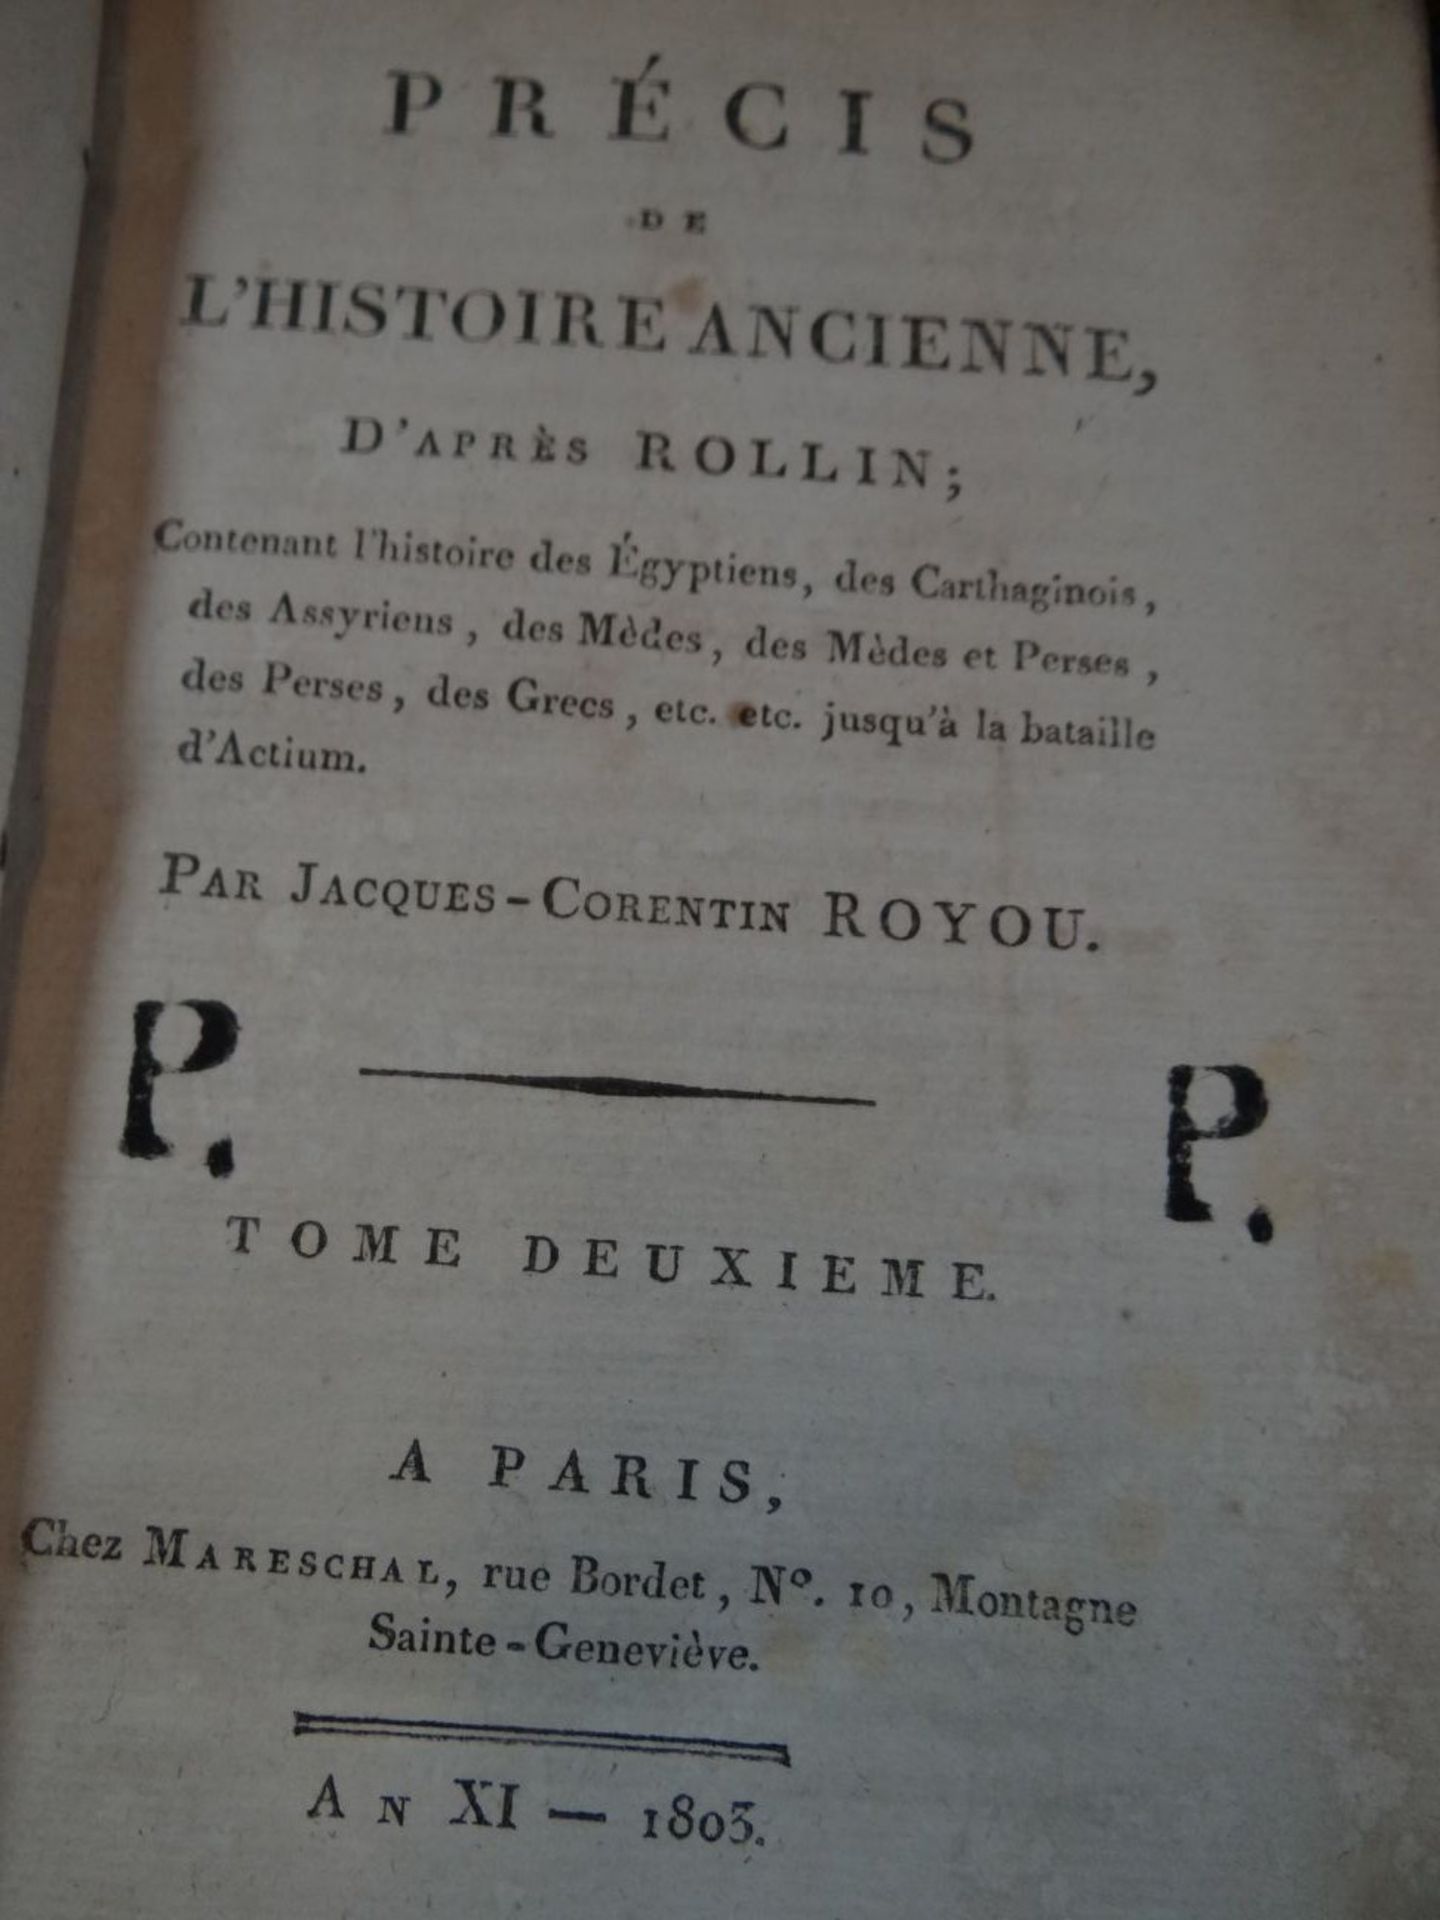 3 Bände "Prècis de L'Historire Ancienne" 1805, Ledereinbände, Gebrauchsspuren, Bd. 2-3-4, französis - Image 2 of 10